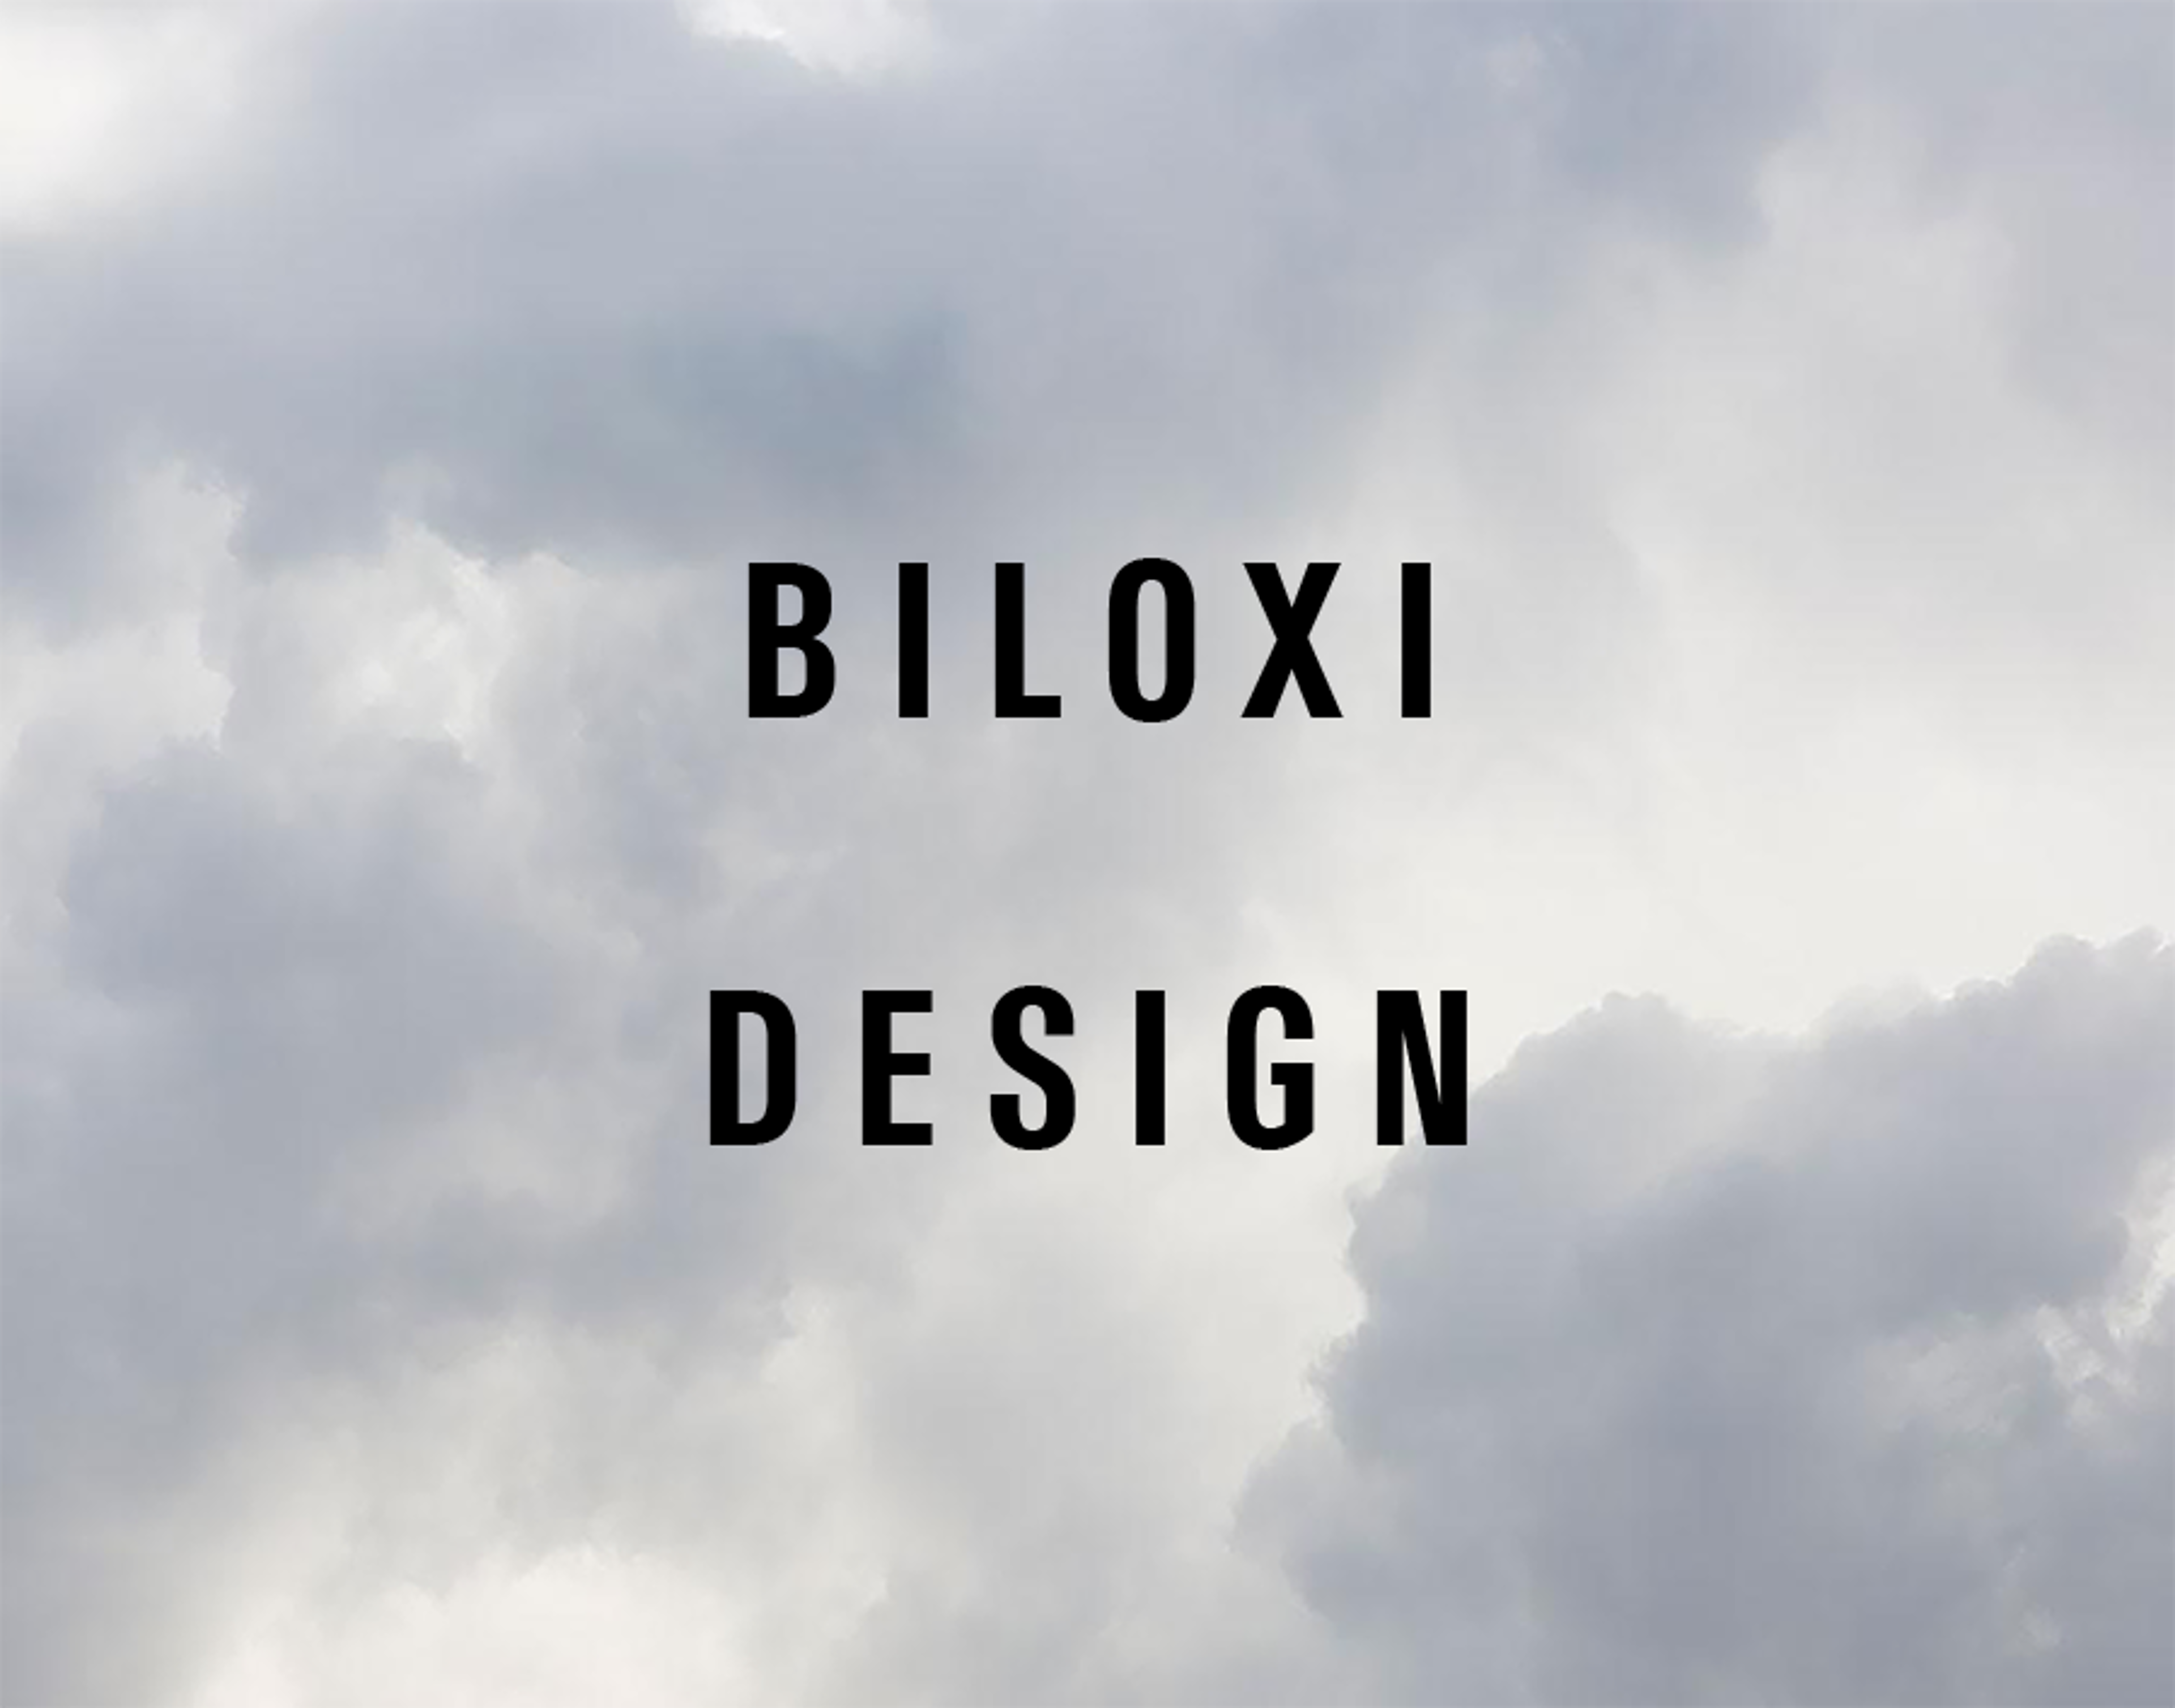 Biloxi Design